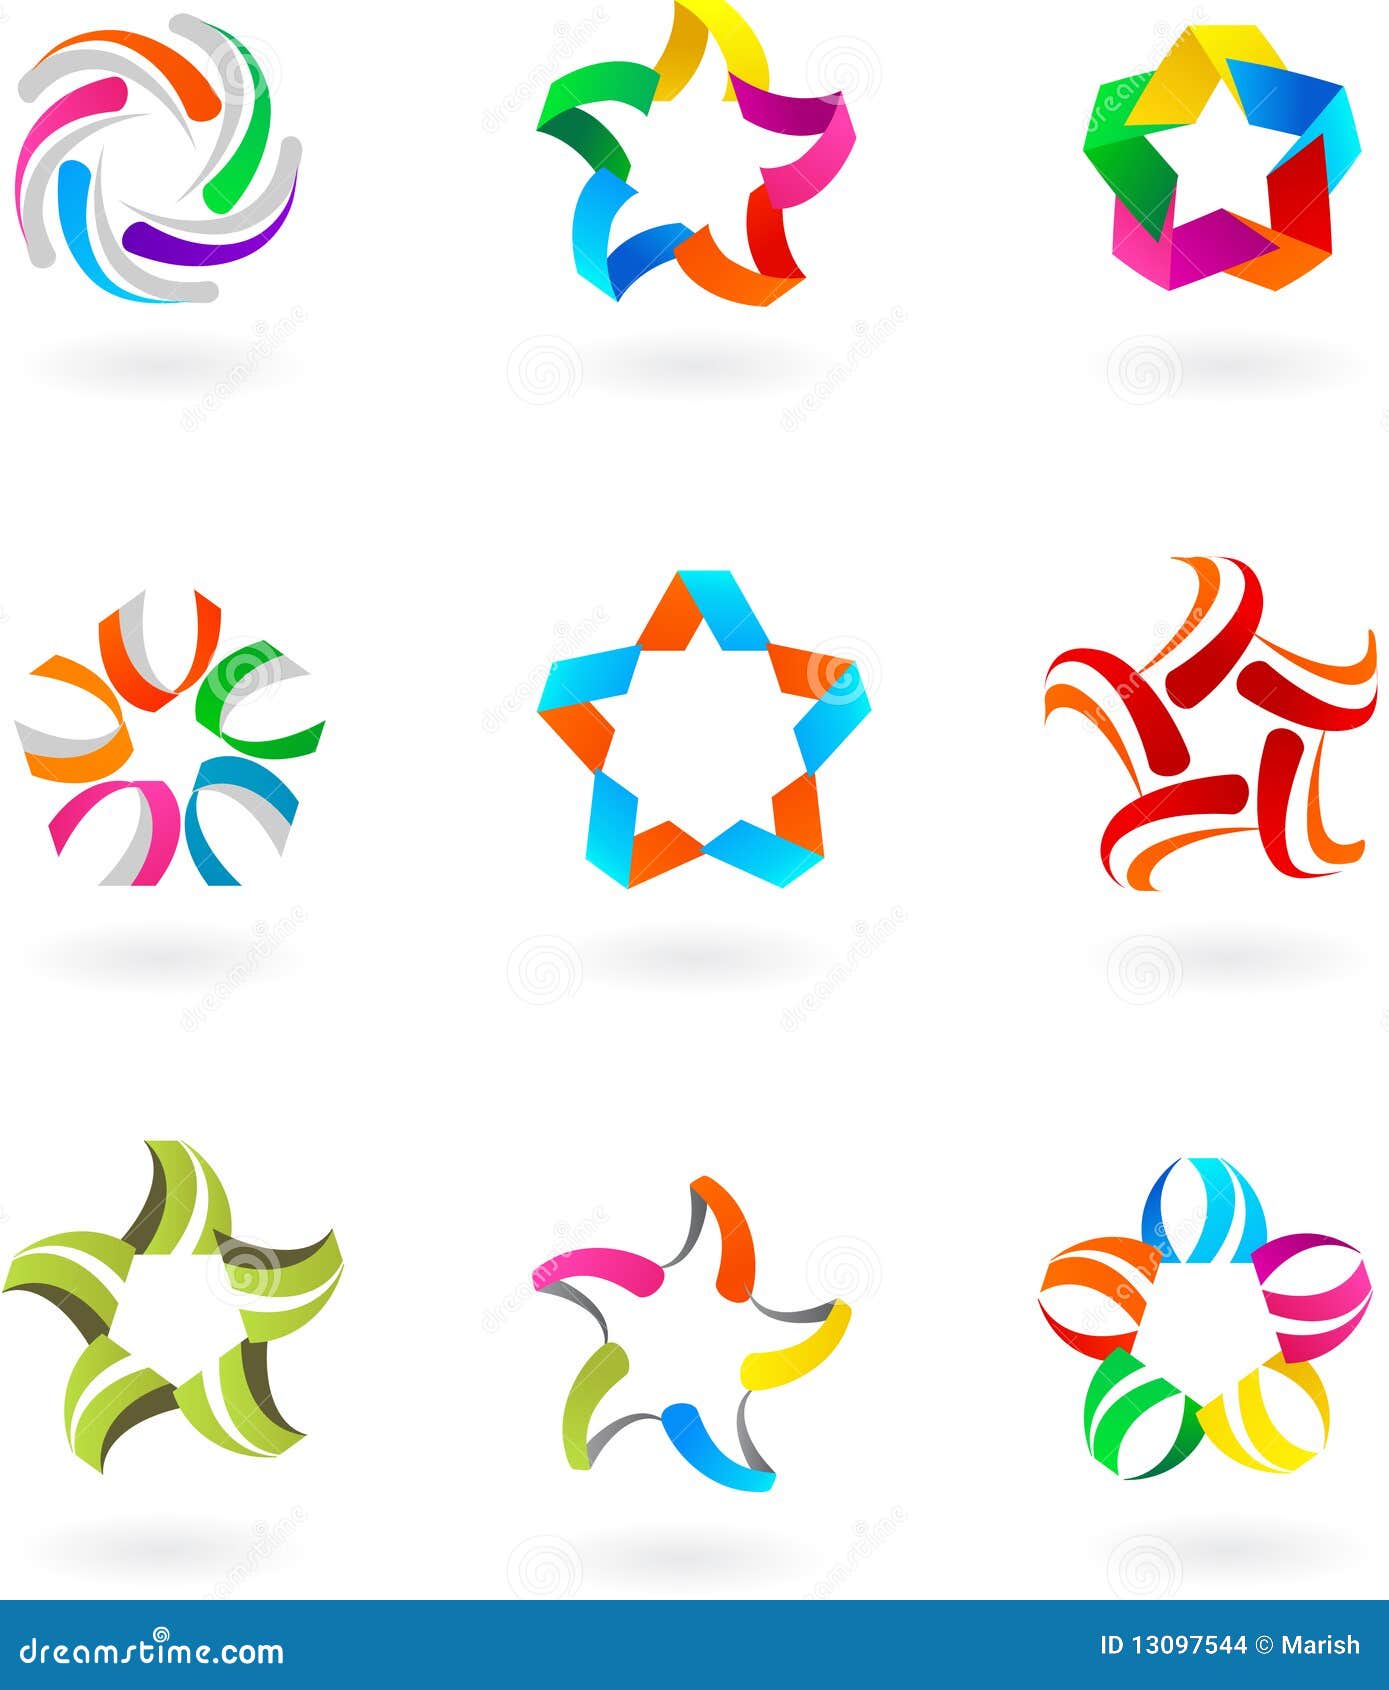 Set av abstrakt symboler och logoer #3 - design. Samling av abstrakt logo- & designelement - 9 stycken